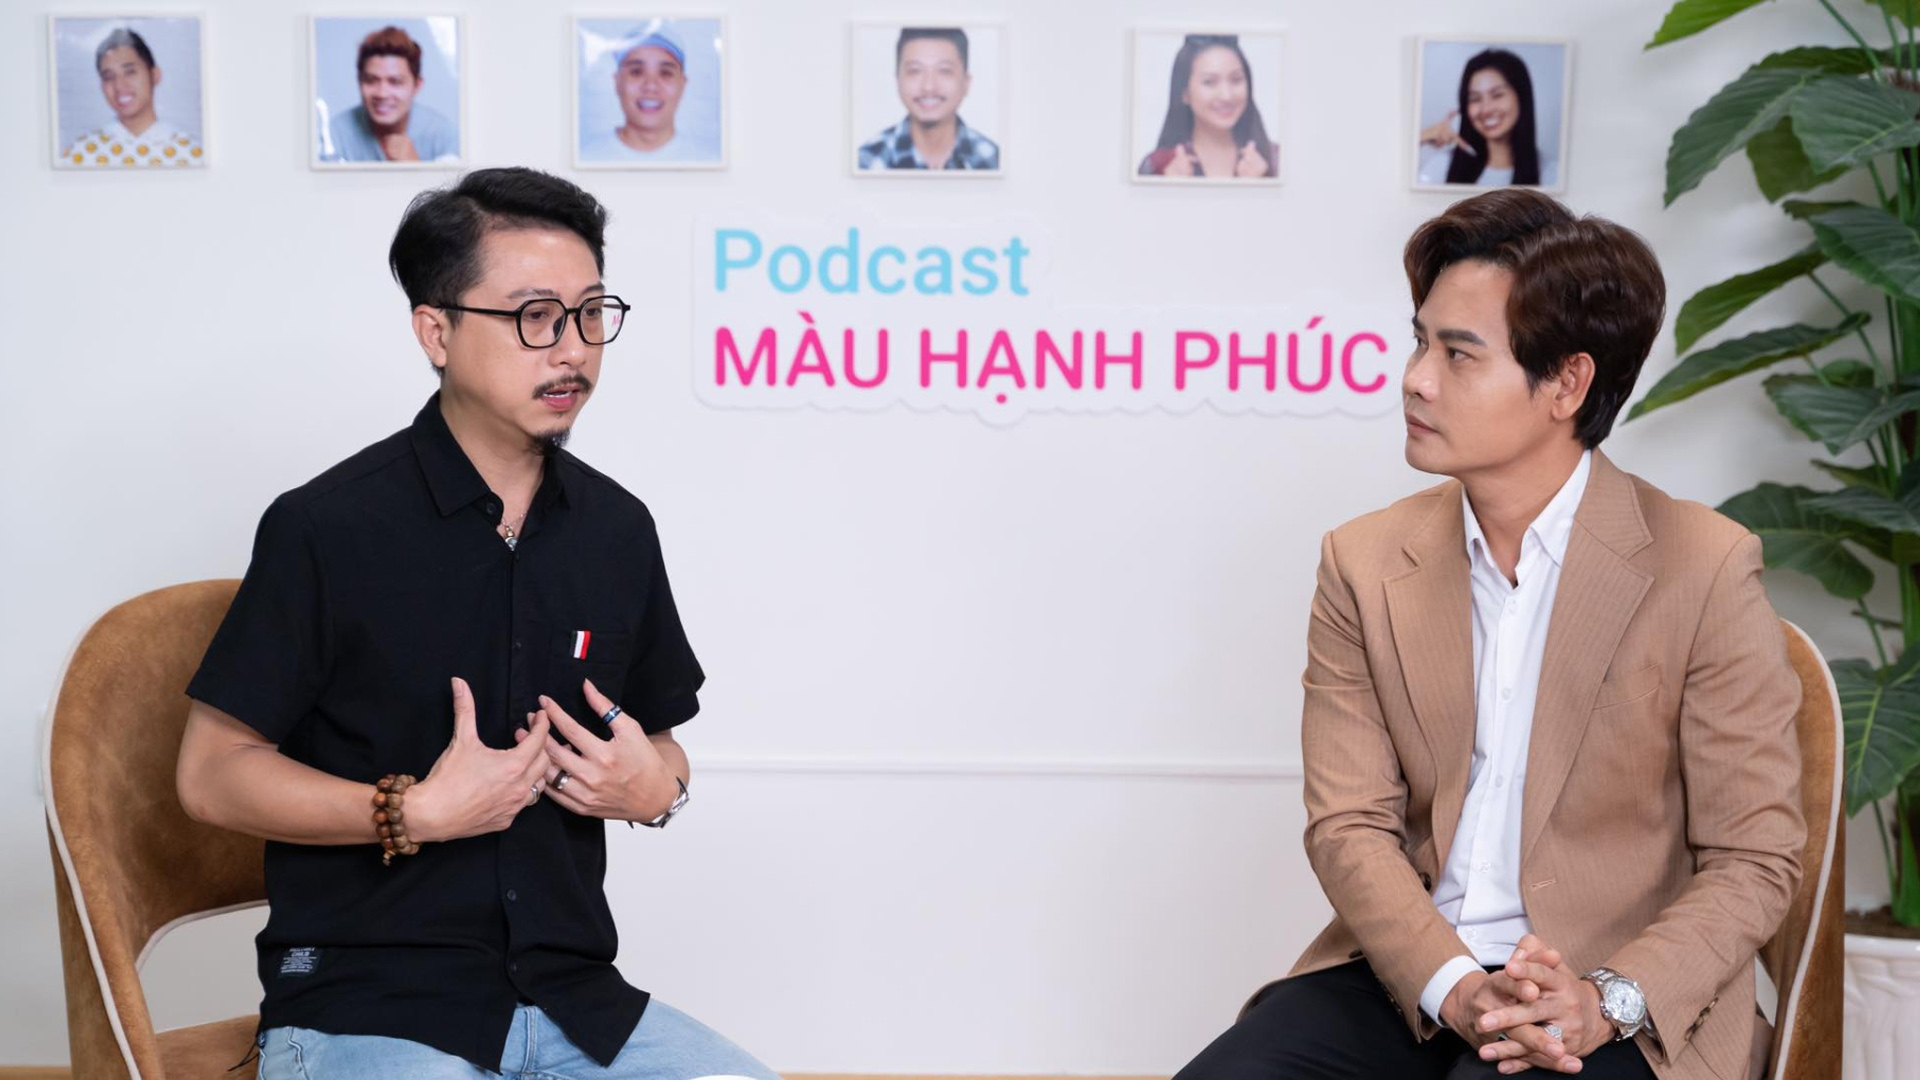 MC Hồng Phúc tung Podcast nói về những câu chuyện hạnh phúc cùng loạt nghệ sĩ - ảnh 3